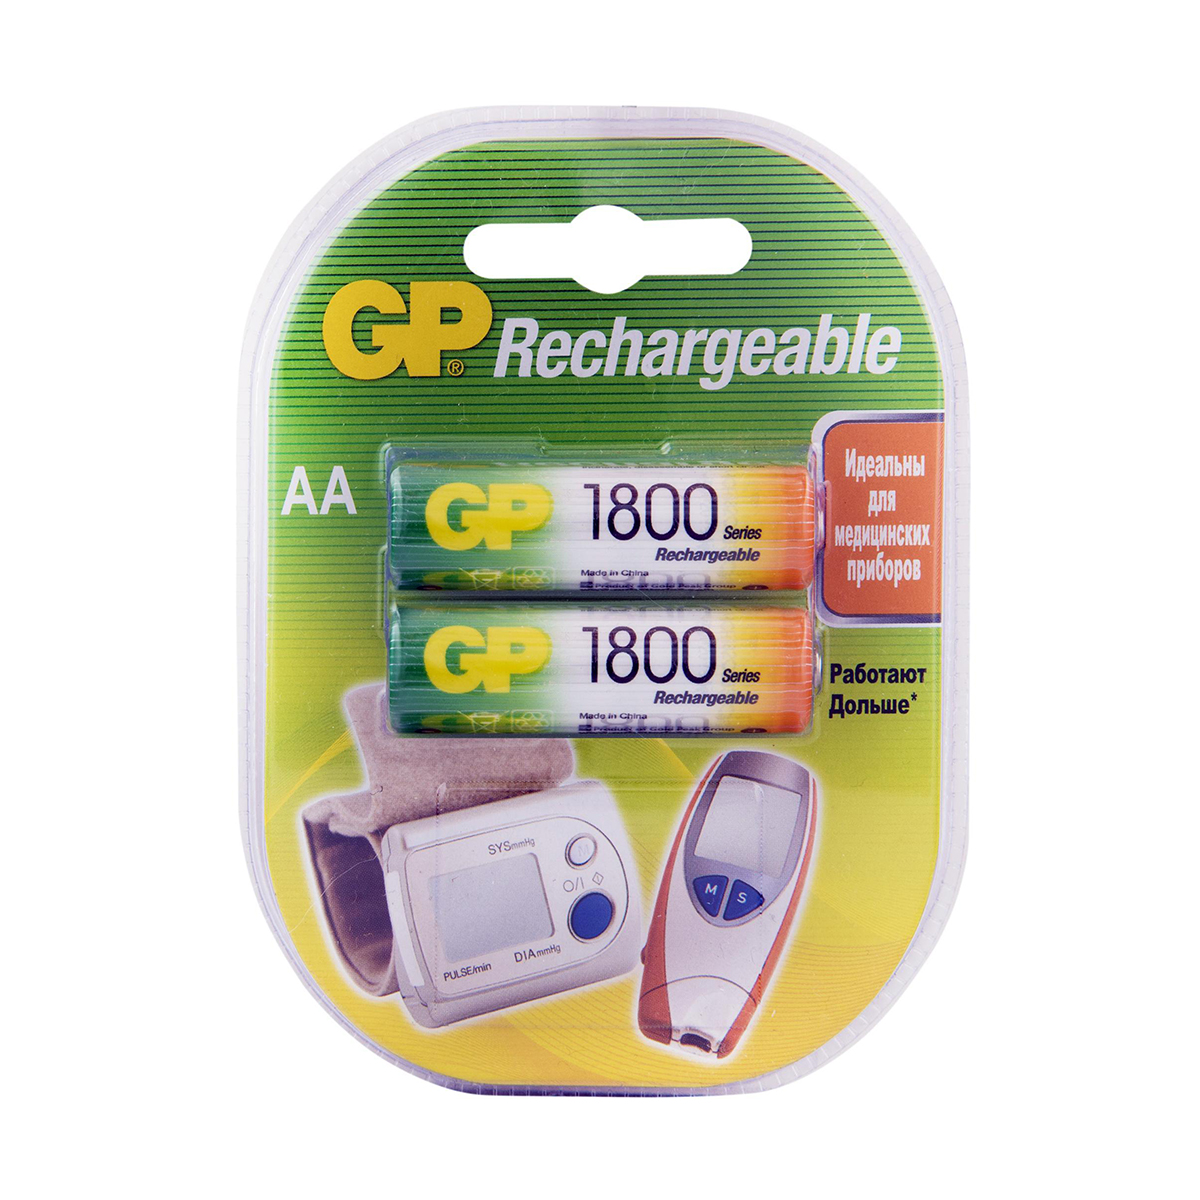 Аккумулятор gp rechargeable 180aahc-2decrc2  тип аа, 1800 мач (2 шт. в блистере) (1/10/100)